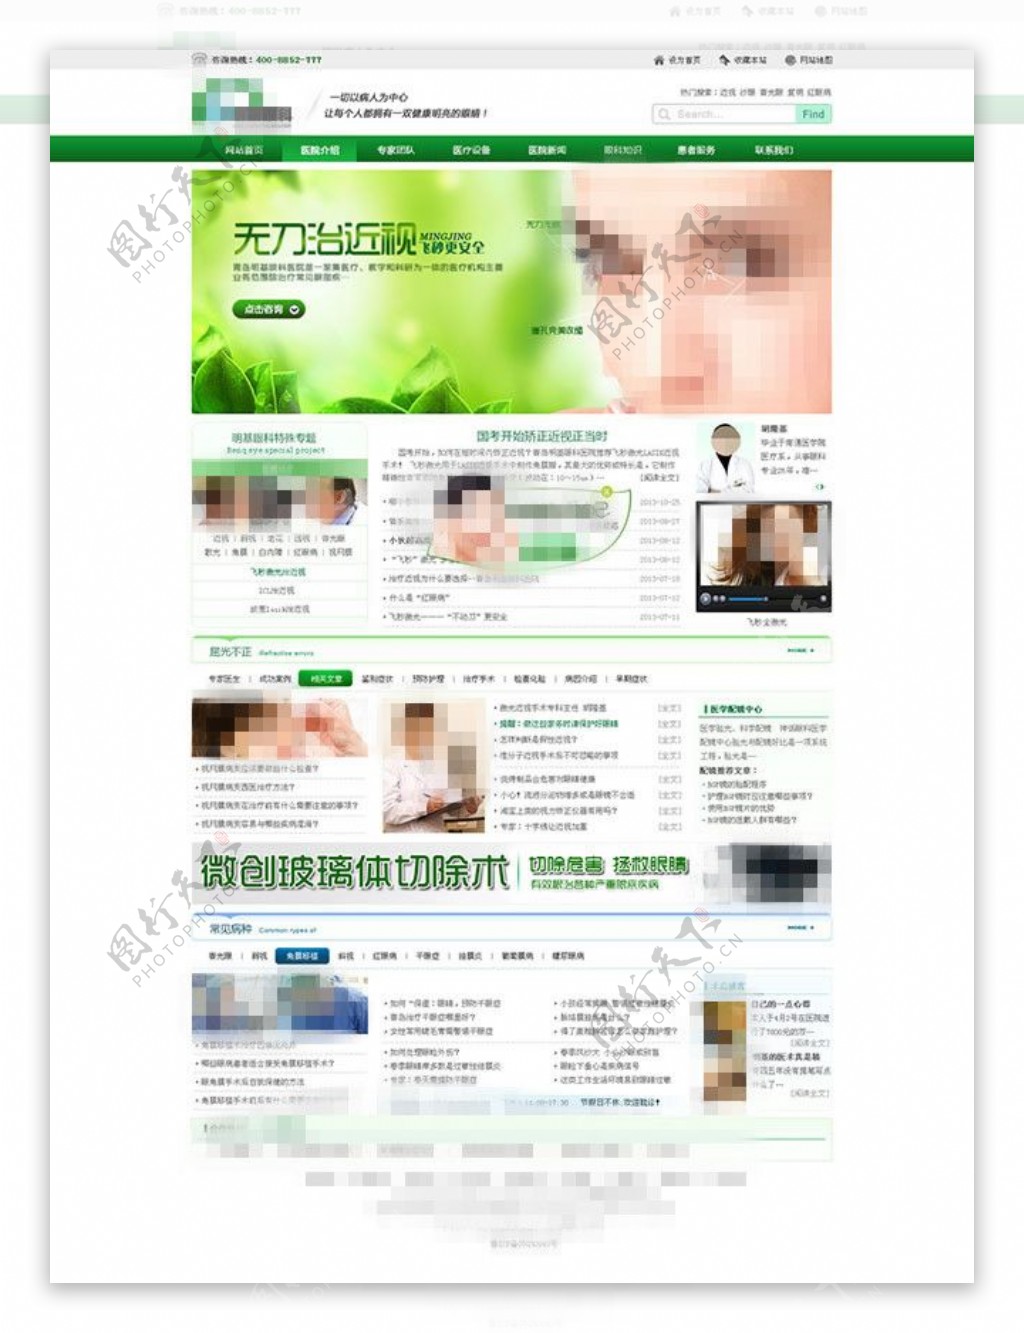 企业网站设计模板psd素材